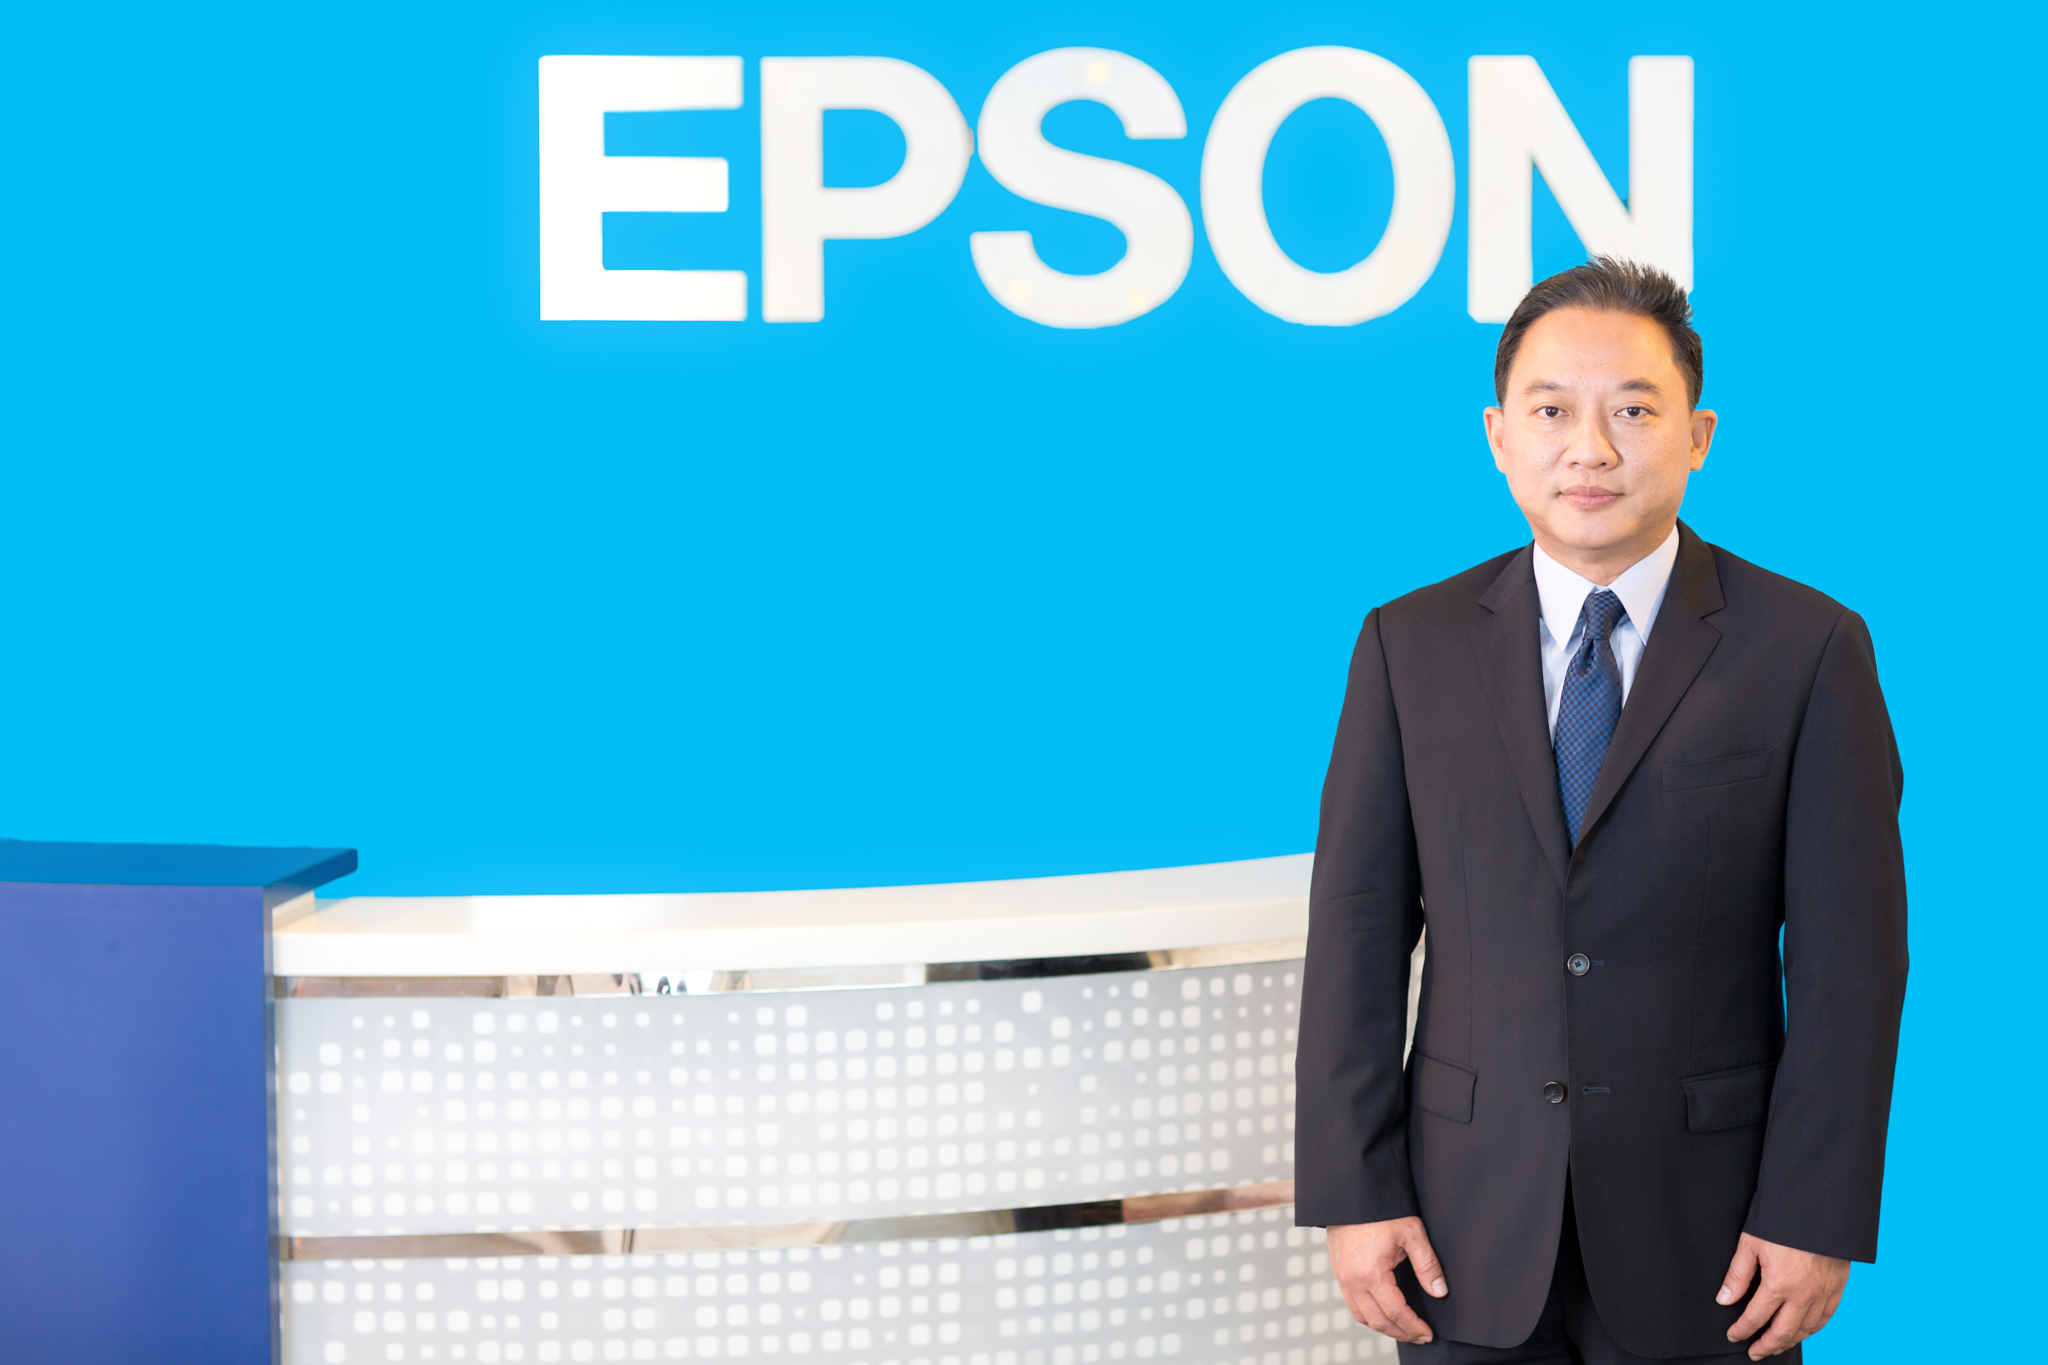 EPSON ลงนามแถลงการณ์ ผนึกกำลังผู้นำภาคธุรกิจทั่วโลก  ร่วมลงนามข้อตกลงโลกแห่งสหประชาชาติ